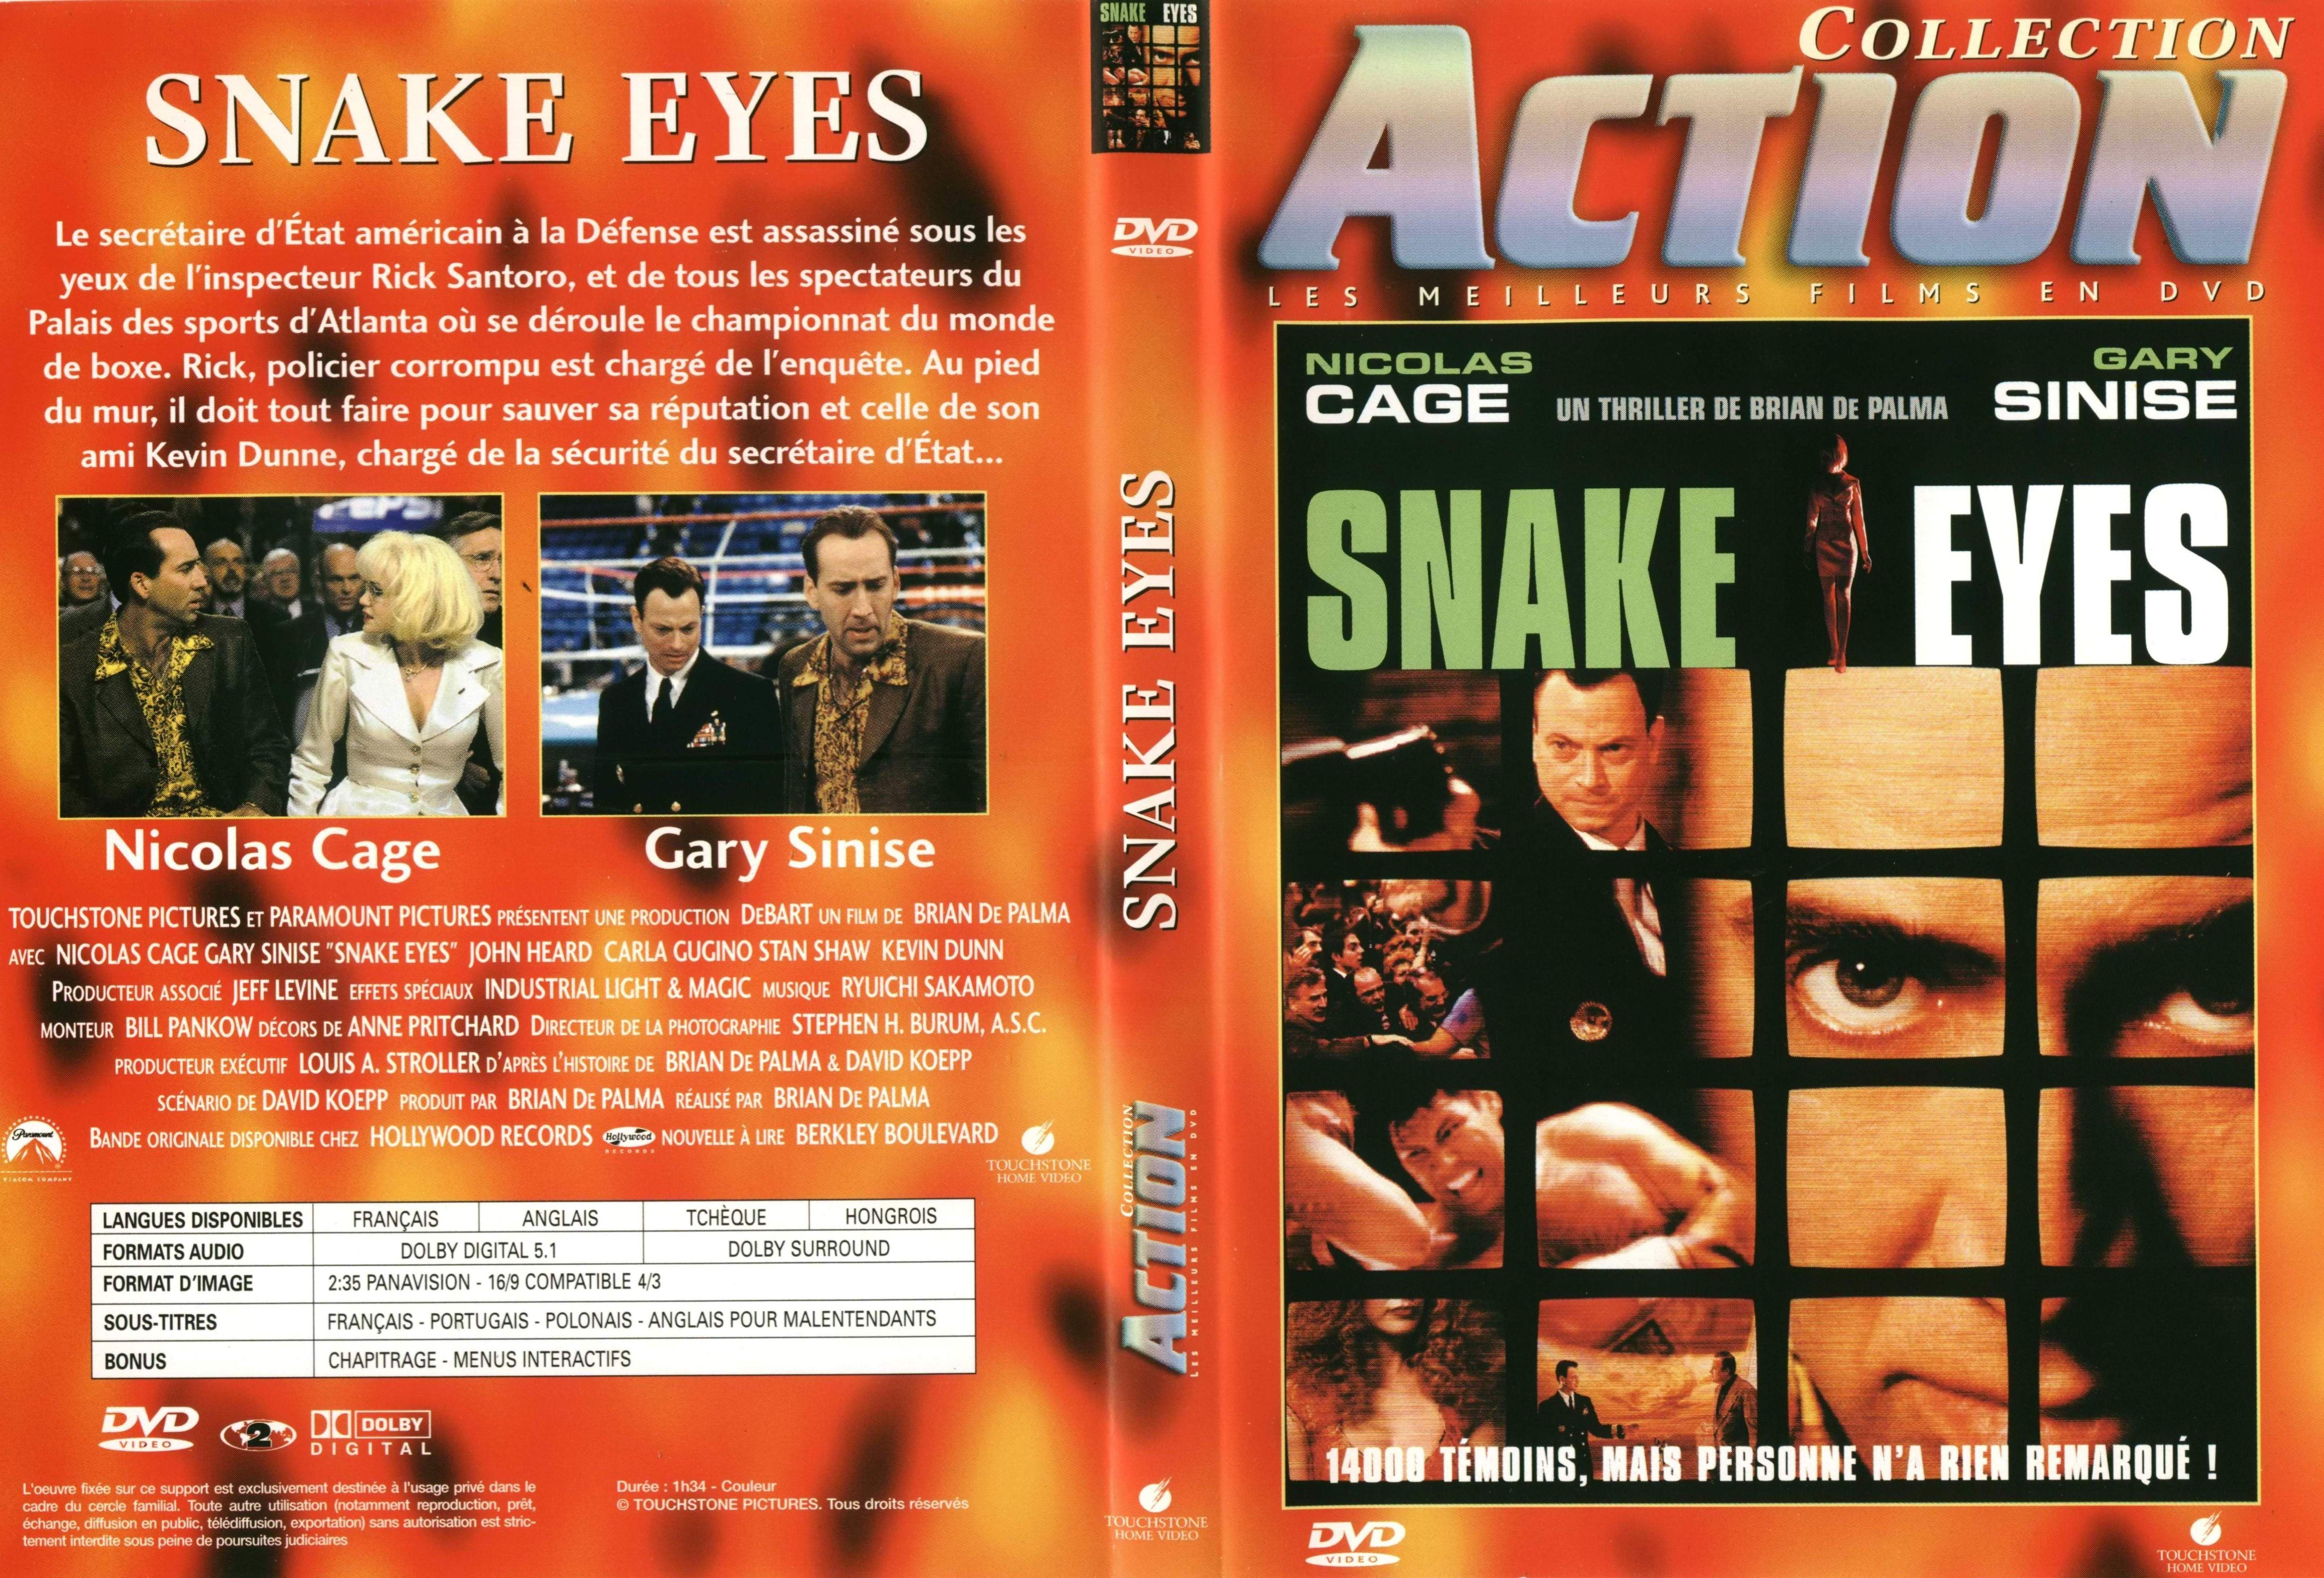 Jaquette DVD Snake eyes v2